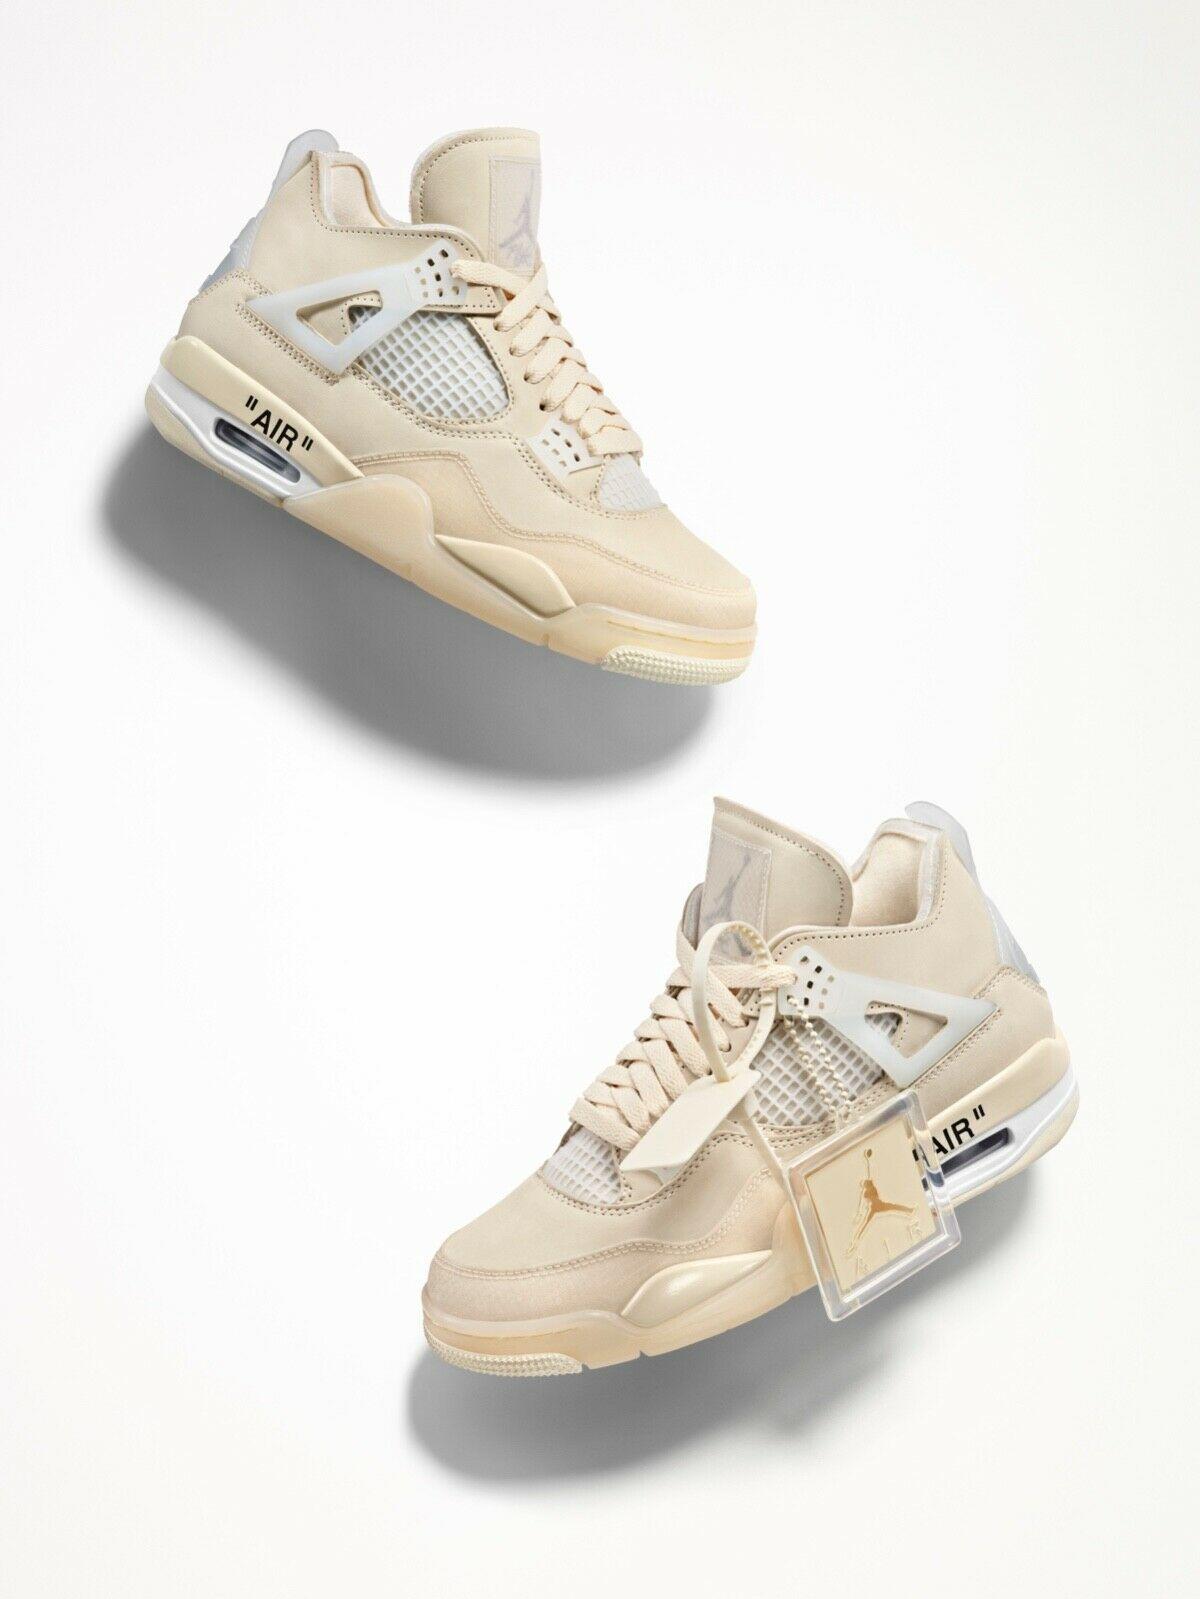 Off White Jordan Unreleased R Sneakers